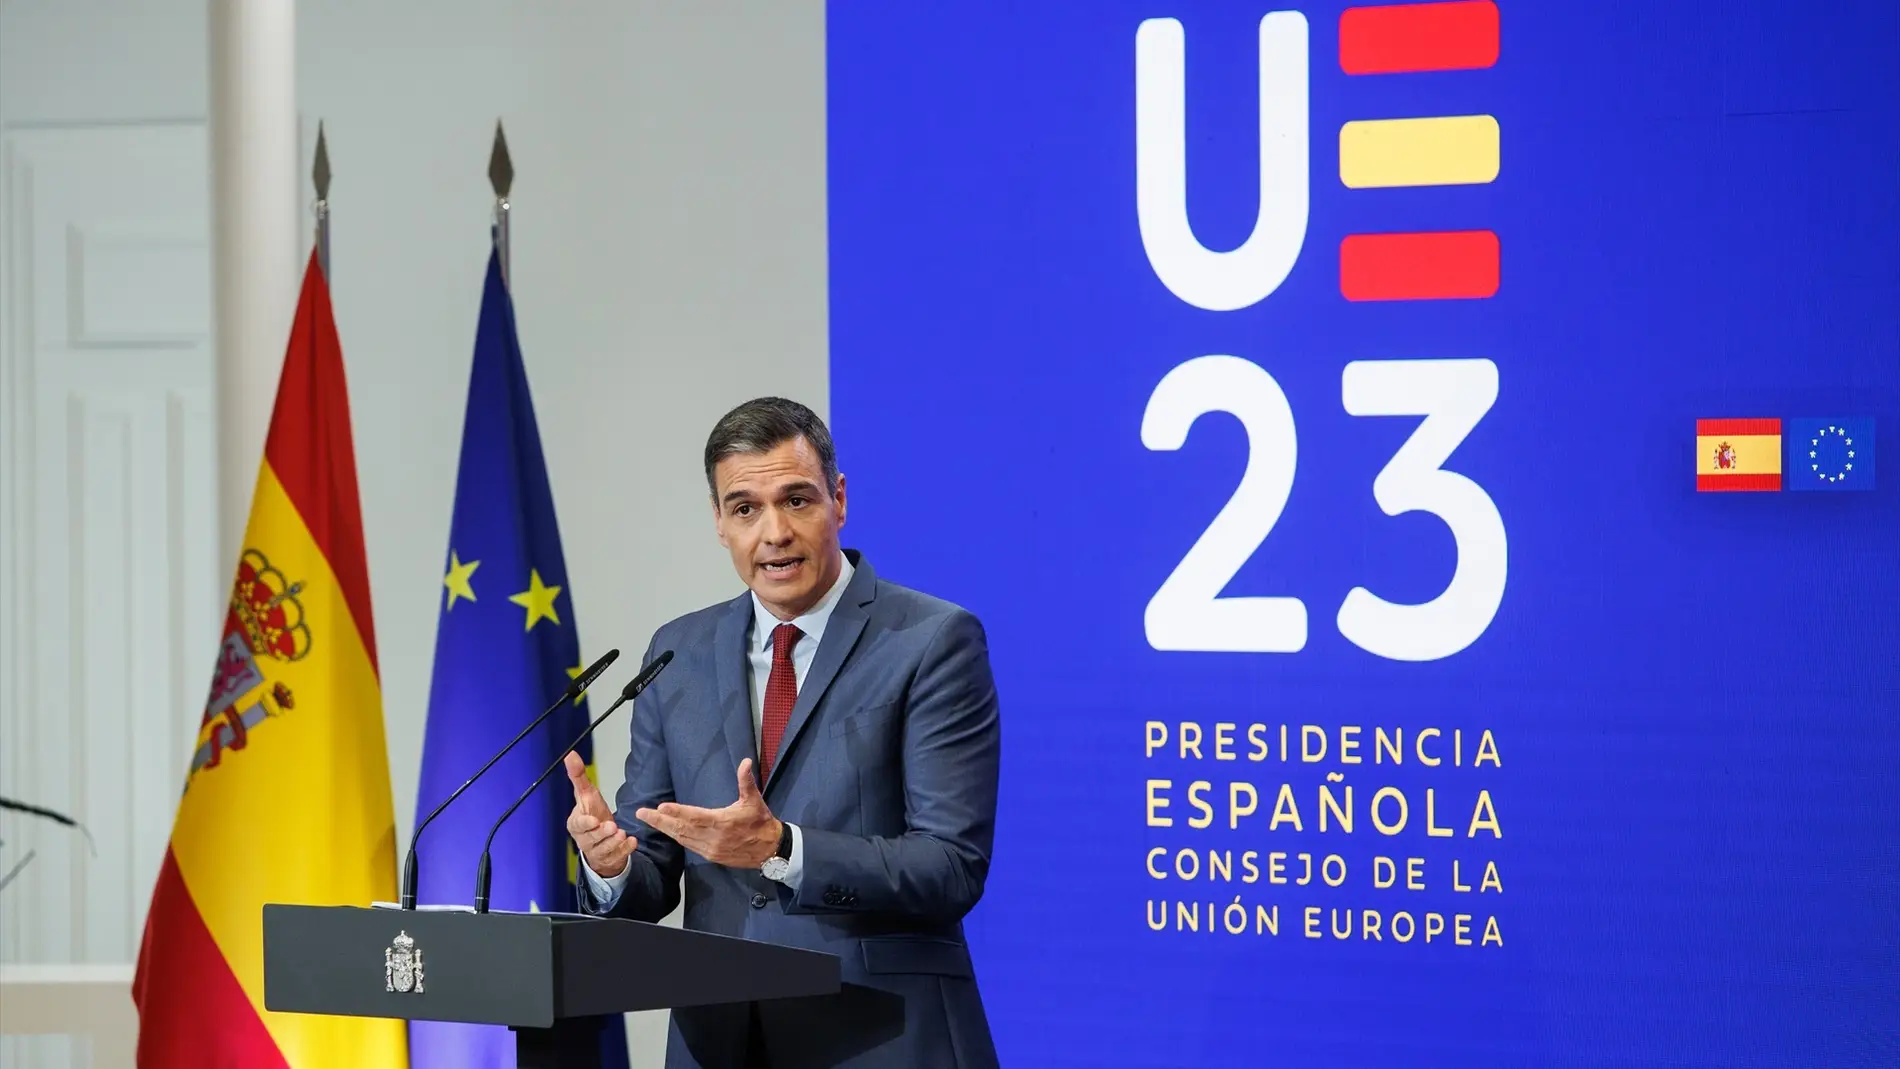 El presidente del Gobierno, Pedro Sánchez, presenta las prioridades de la Presidencia española del Consejo de la UE